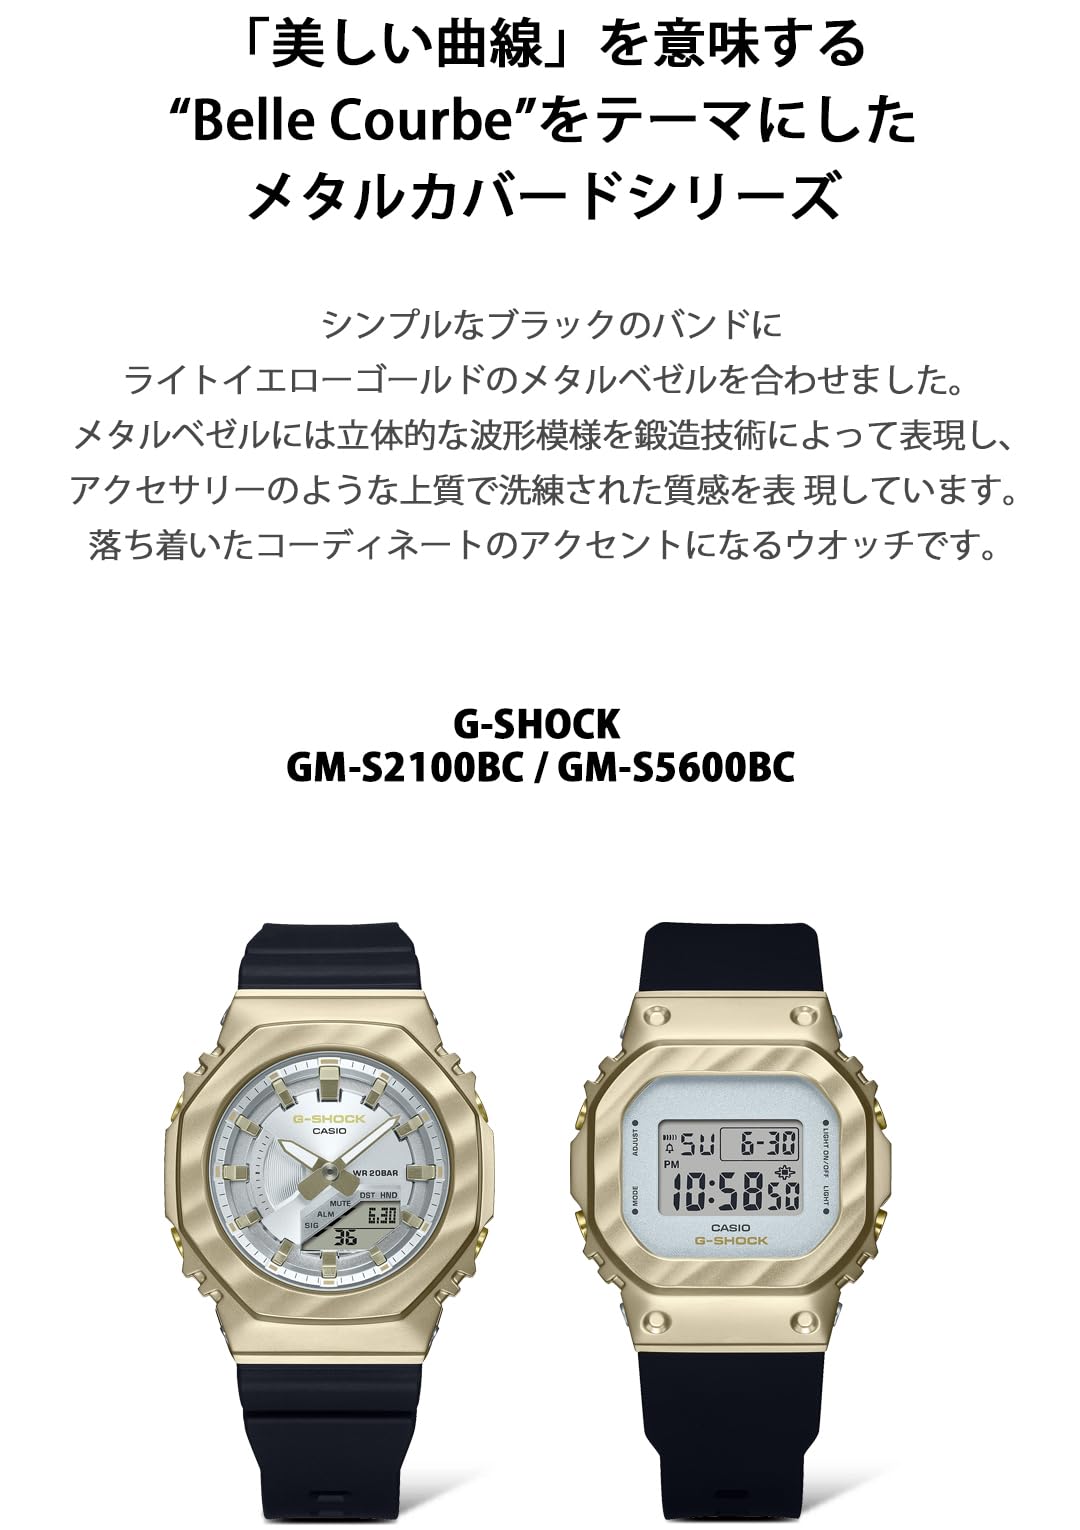 [カシオ] 腕時計 ジーショック【国内正規品】GM-S2100BC-1AJFレディース ブラック - BanzaiHobby